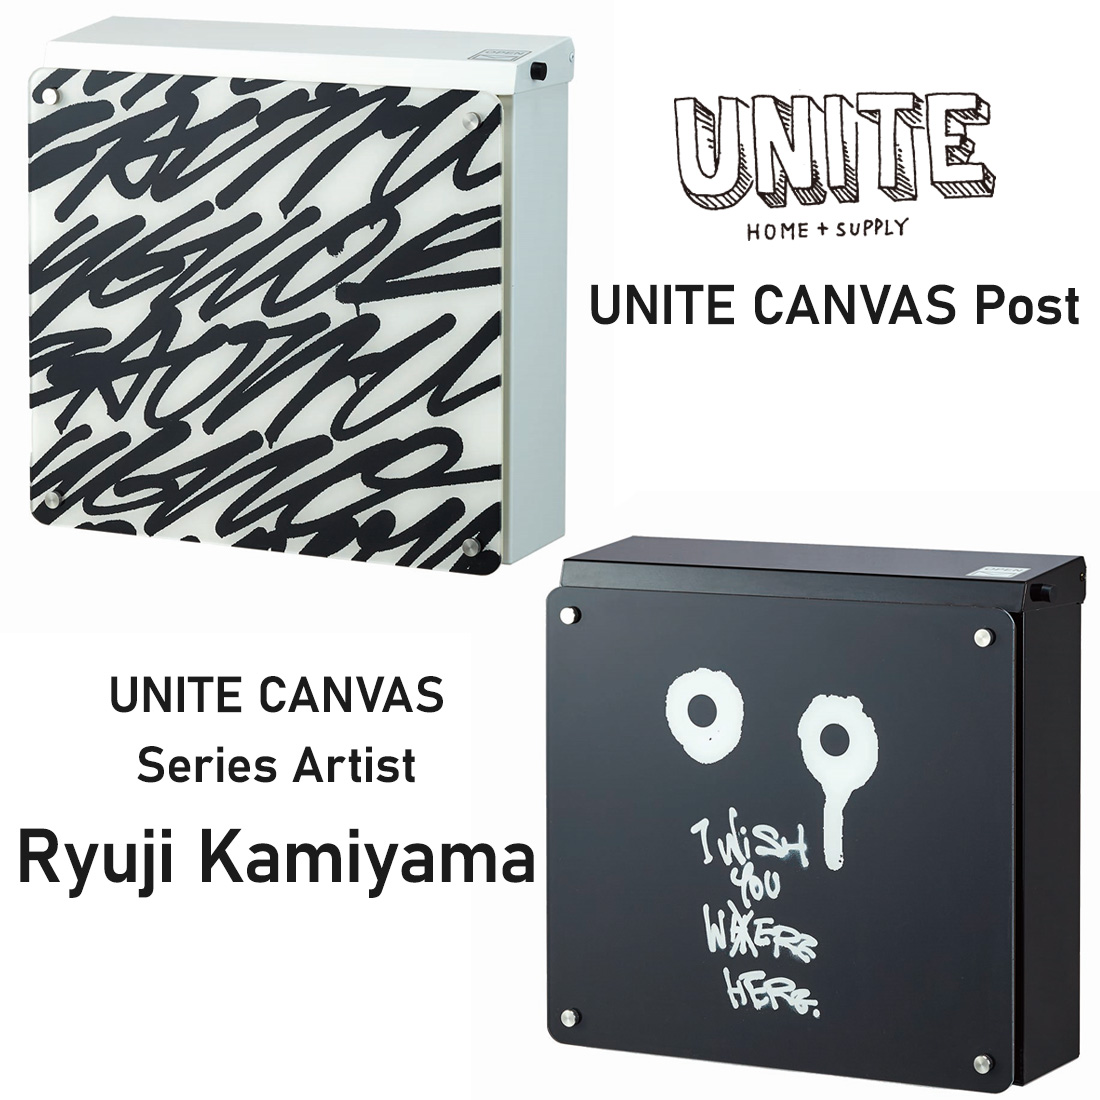 UNITE CANVAS |Xg Ǌ| _C e iCg LoX X֎ zCg ubN uE g[V _R Ryuji Kamiyama